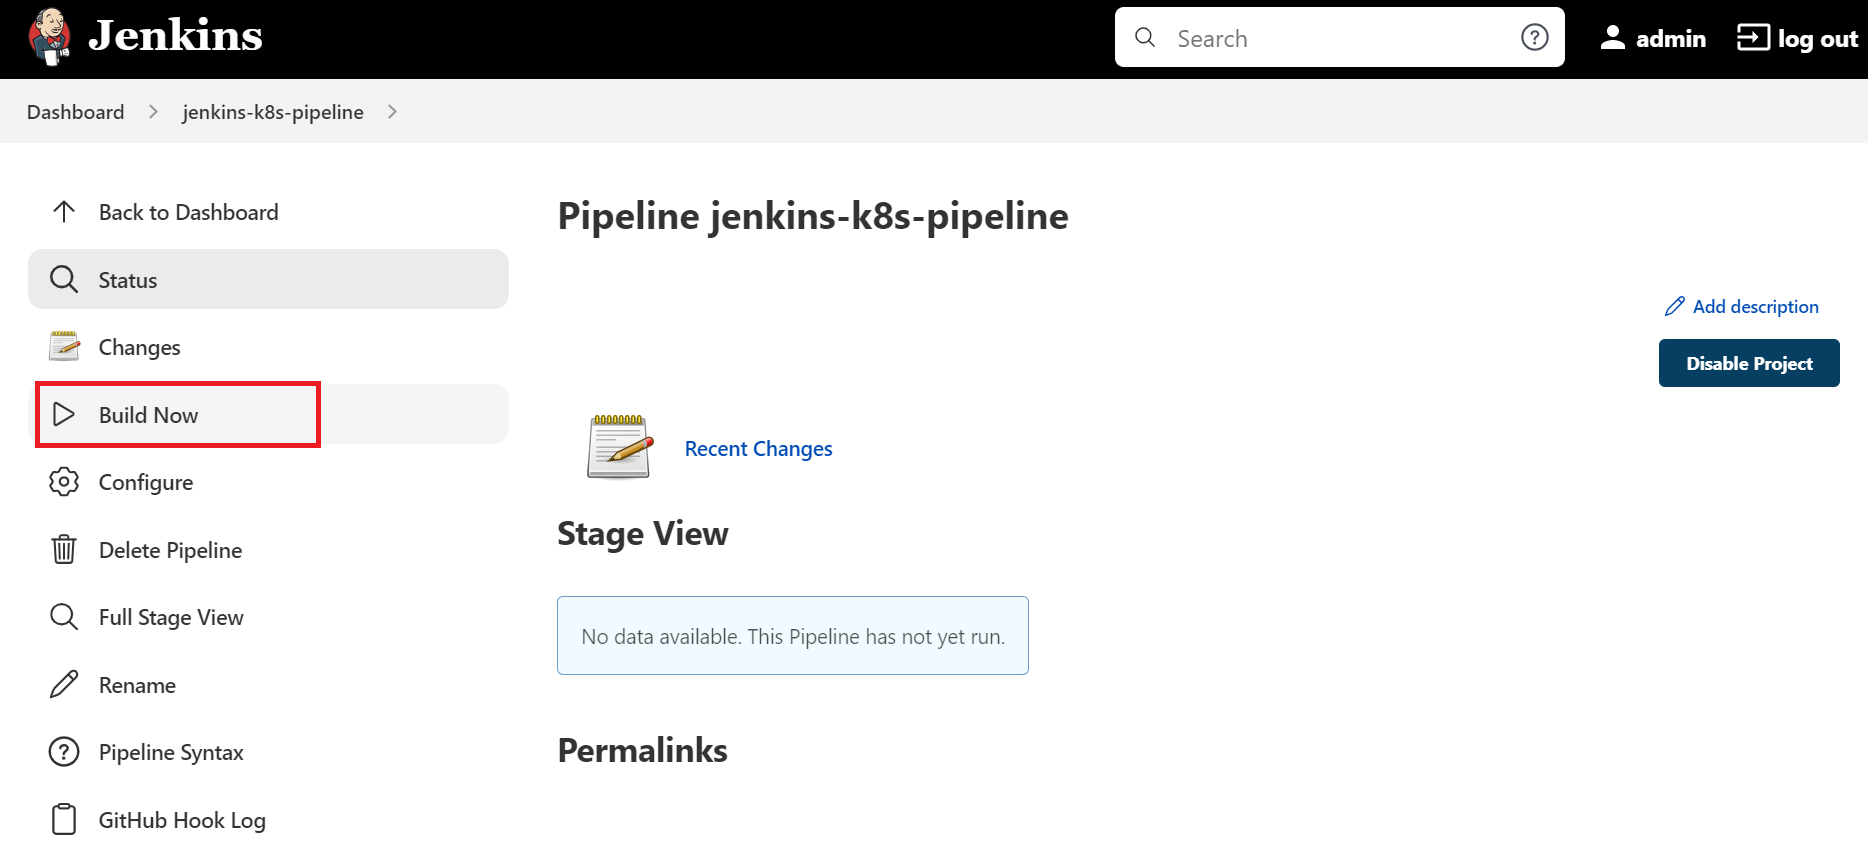 Jenkins Pipeline Build Now